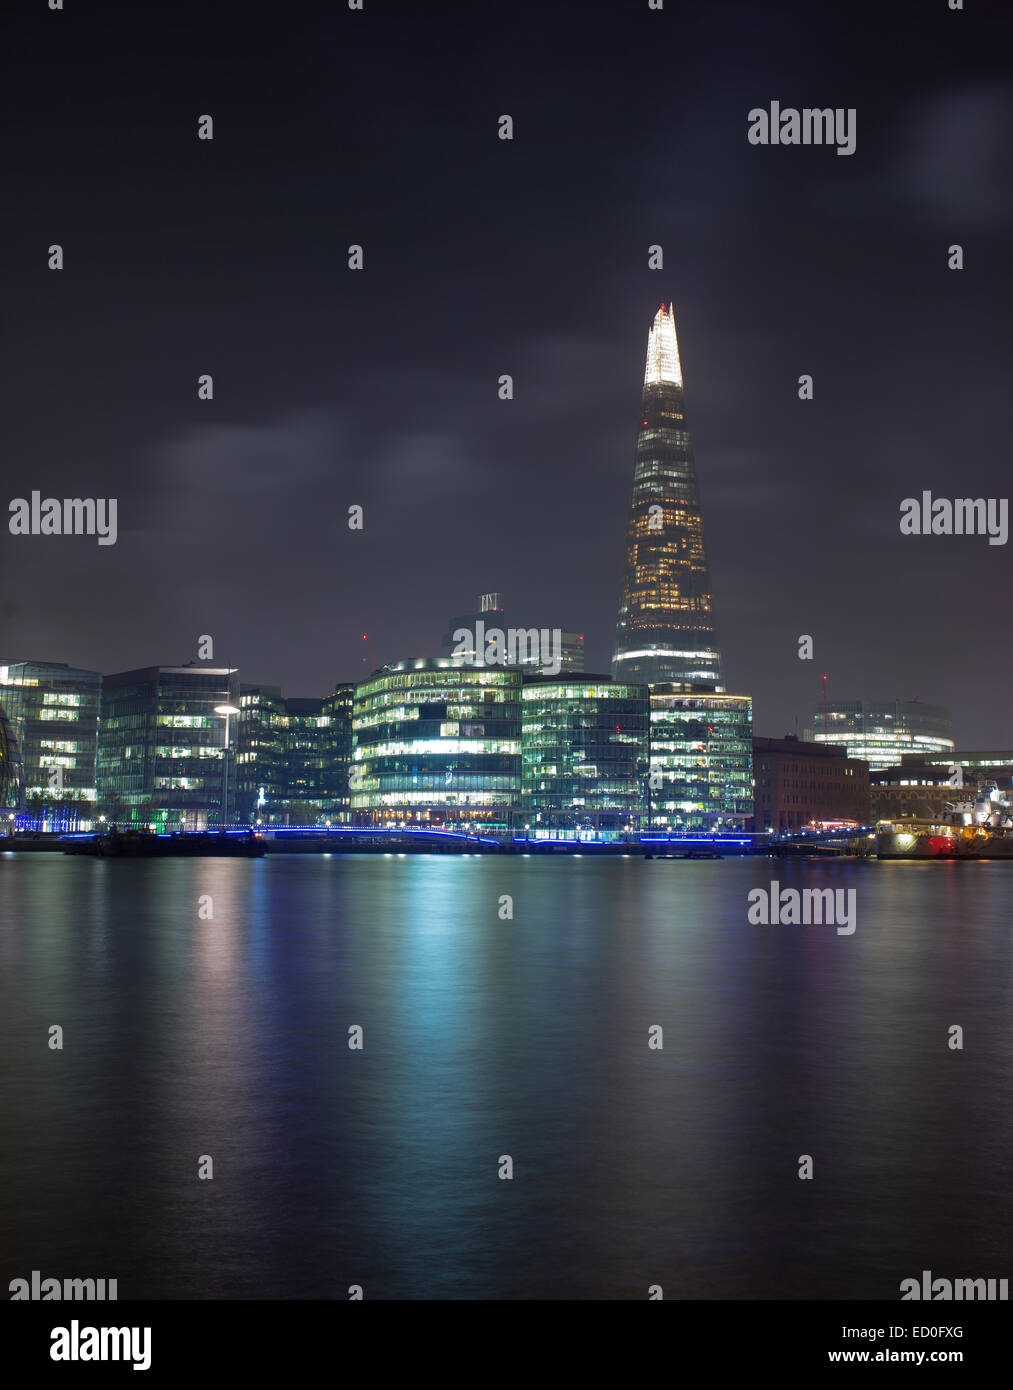 Vereinigtes Königreich, London, Shard Wolkenkratzer beleuchtet in der Nacht und Themse im Vordergrund Stockfoto